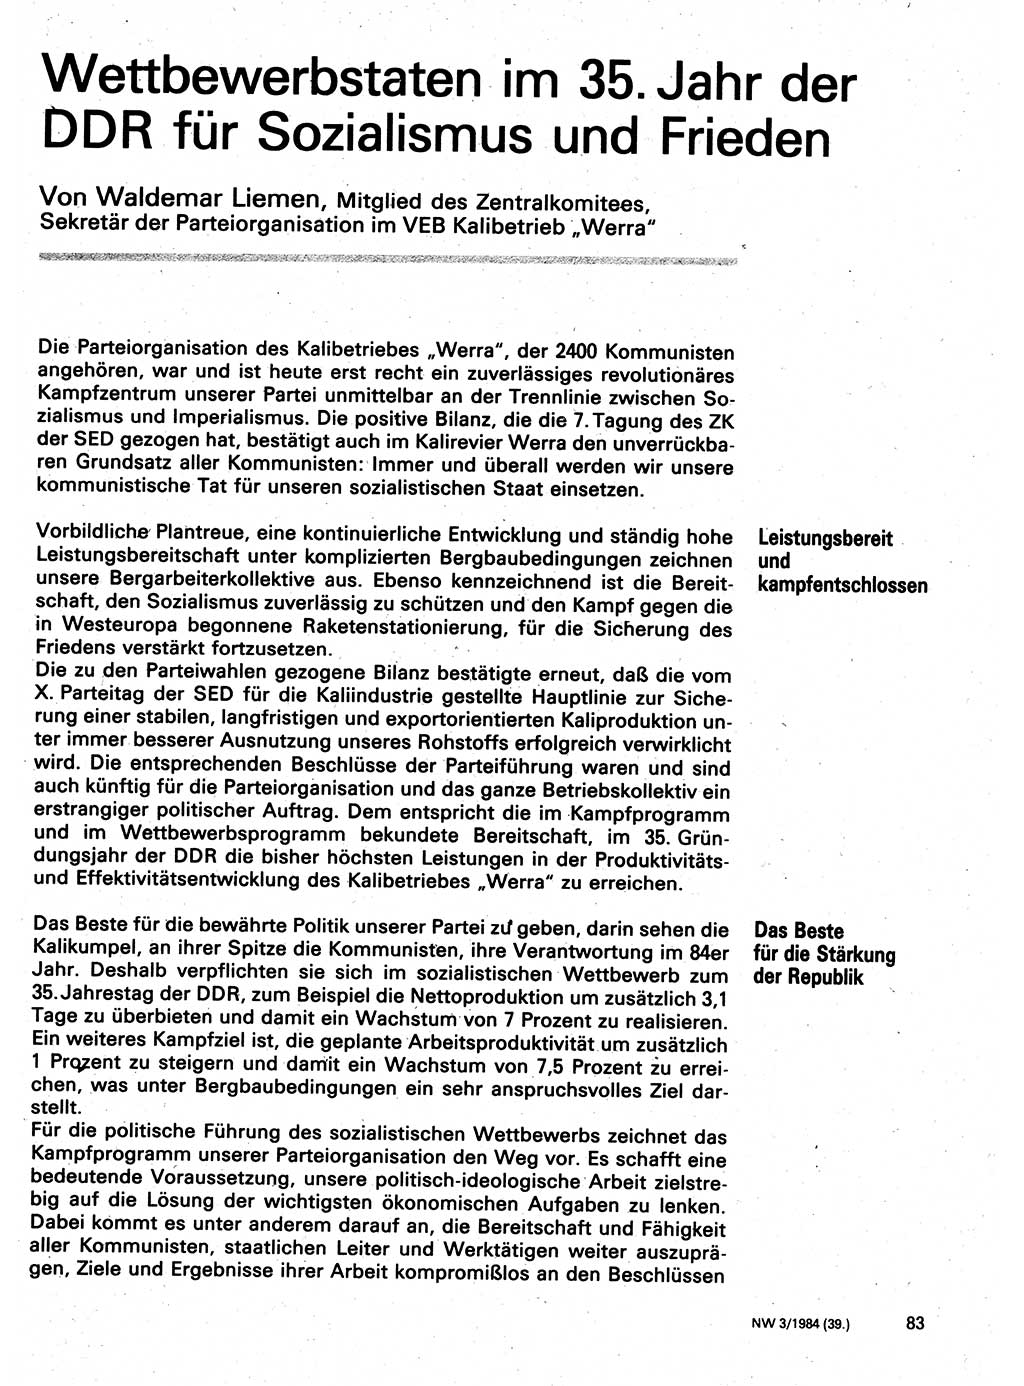 Neuer Weg (NW), Organ des Zentralkomitees (ZK) der SED (Sozialistische Einheitspartei Deutschlands) für Fragen des Parteilebens, 39. Jahrgang [Deutsche Demokratische Republik (DDR)] 1984, Seite 83 (NW ZK SED DDR 1984, S. 83)